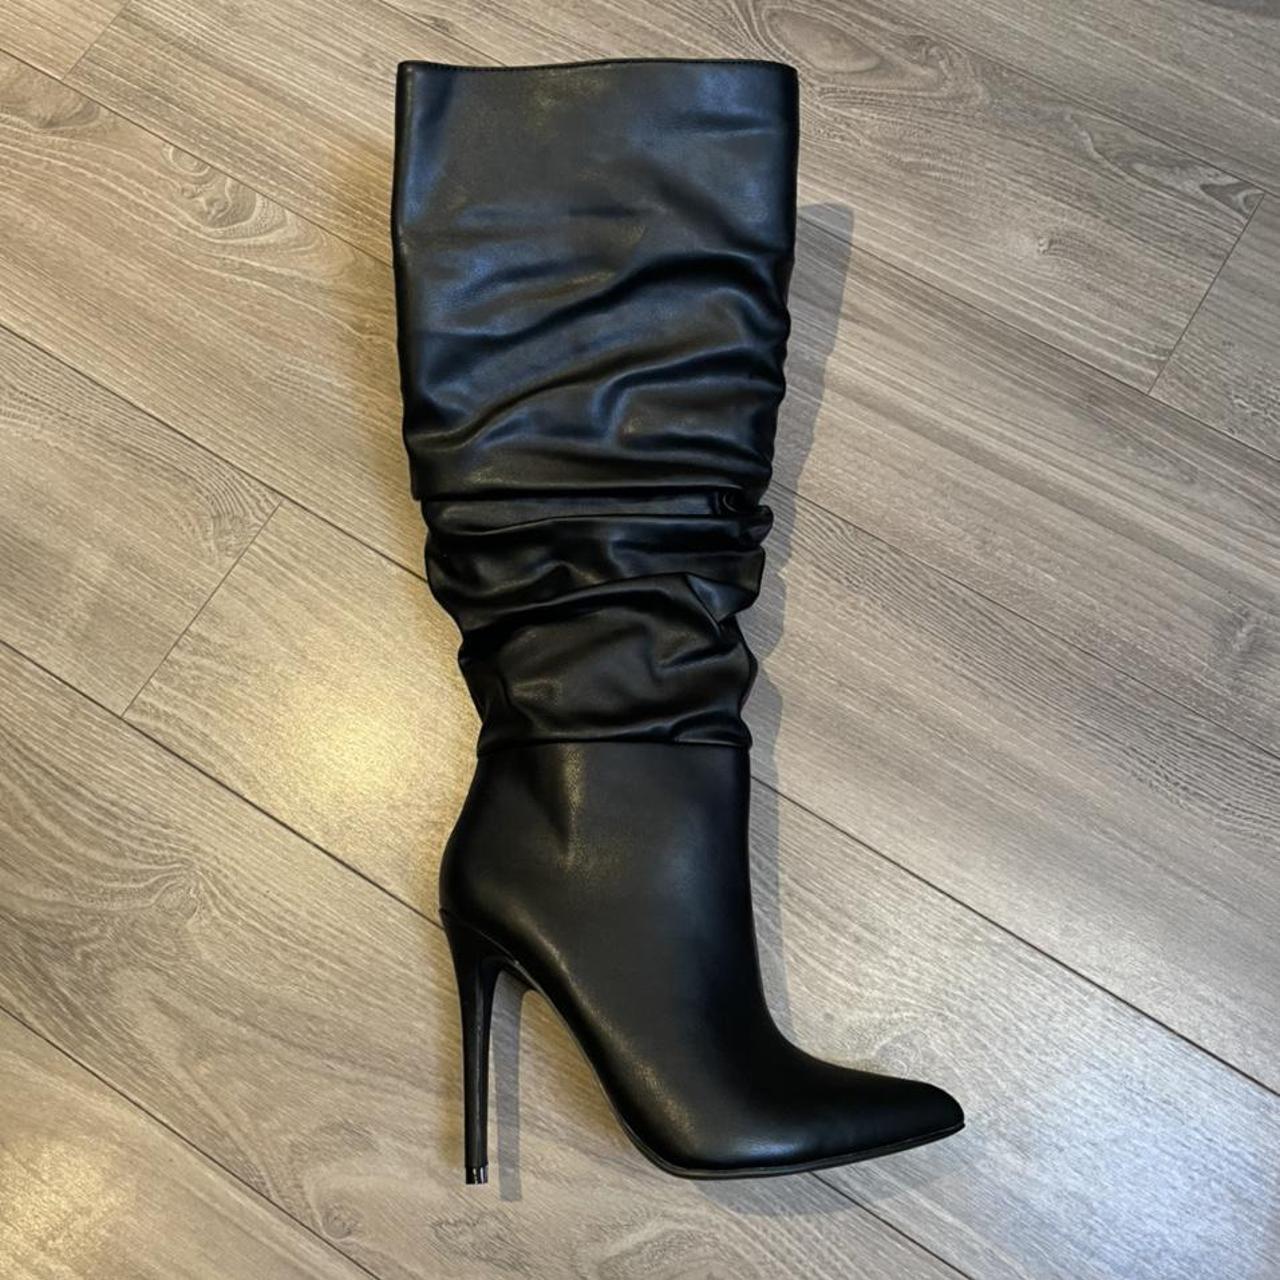 Justfab Womens Black Boots Depop 